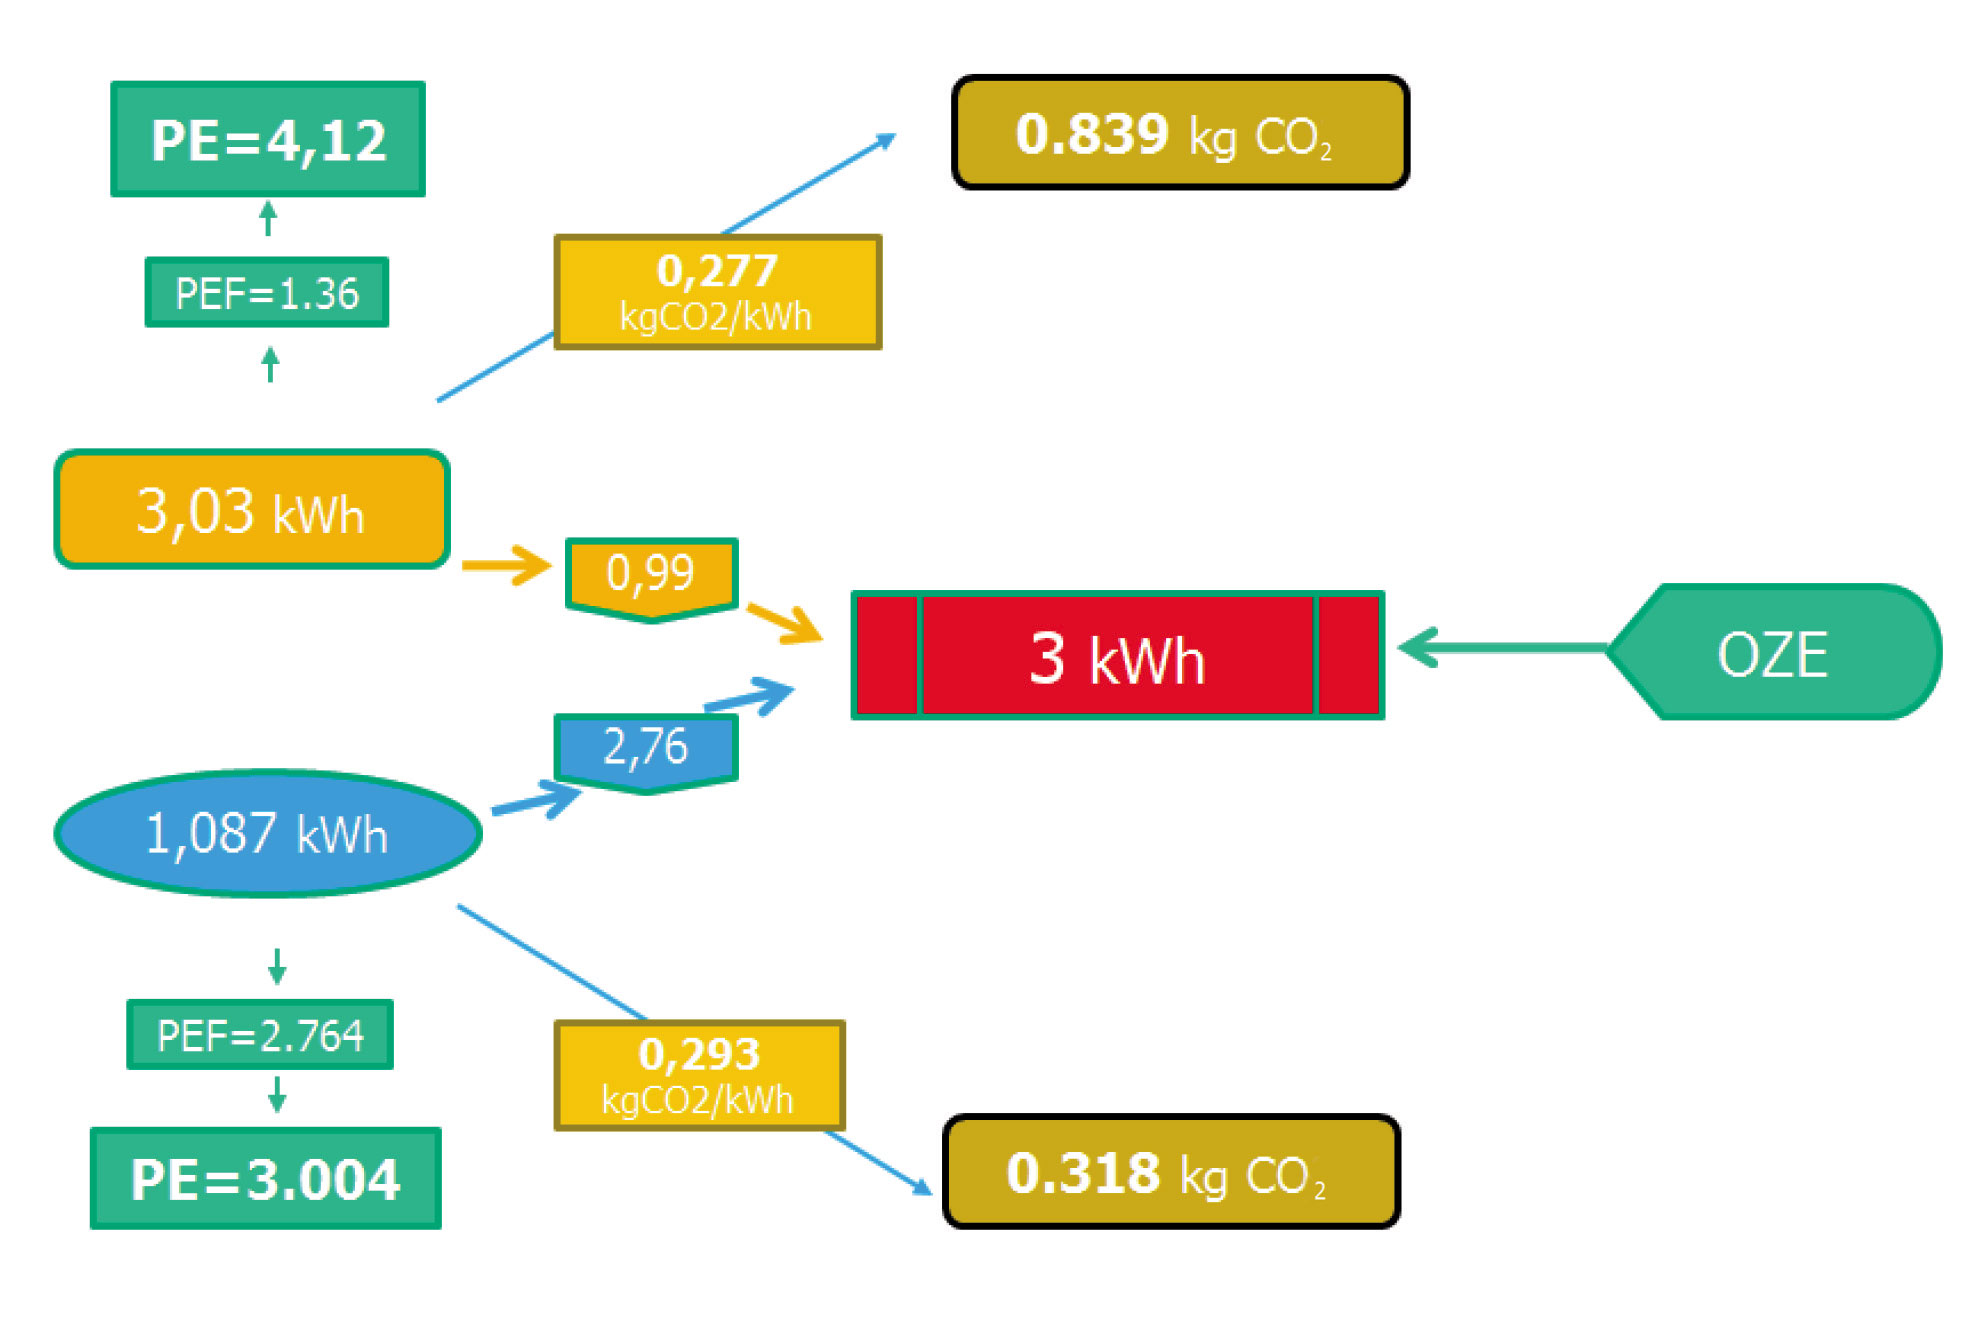 Obr. 1 Výpočet PE (primárnej energie) a emisií CO2 pri výrobe 3 kWh tepla podľa vyhlášky. TČ na obrázku spotrebuje na výrobu 3 kWh tepla 1,08 kWh elektriny. To zodpovedá 3 kWh PE (1,37x menej ako PE z plynu).  TČ vyprodukuje 0,318 kg CO2 (2,6x menej ako z plynu).